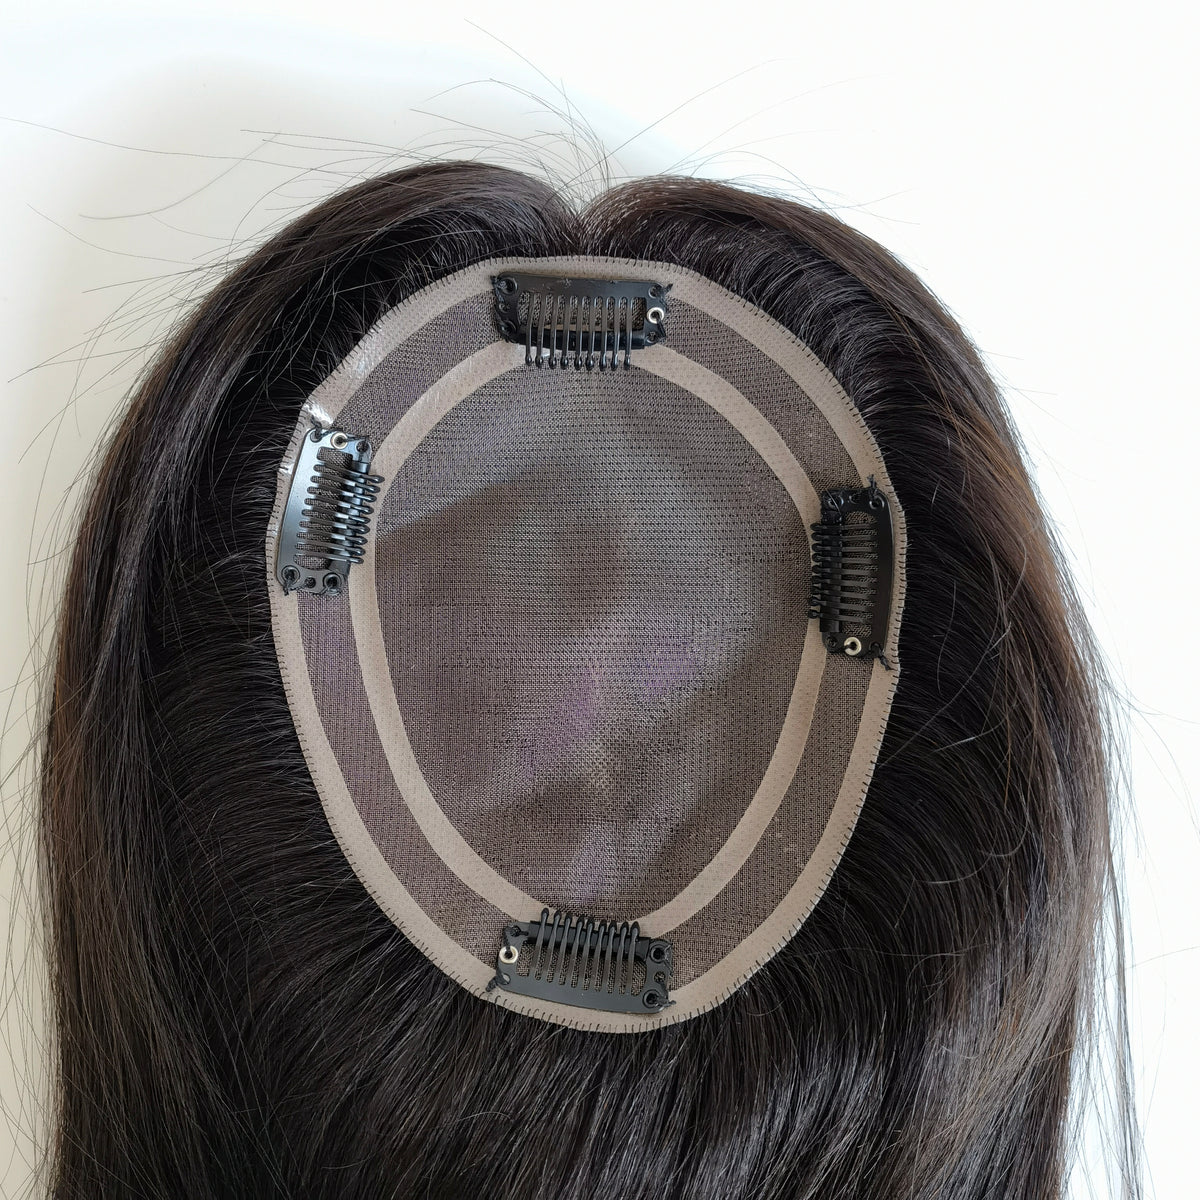 Aufsteckbares Monobasis-Haarteil für Damen, reines Haar, 12,7 x 15,2 cm